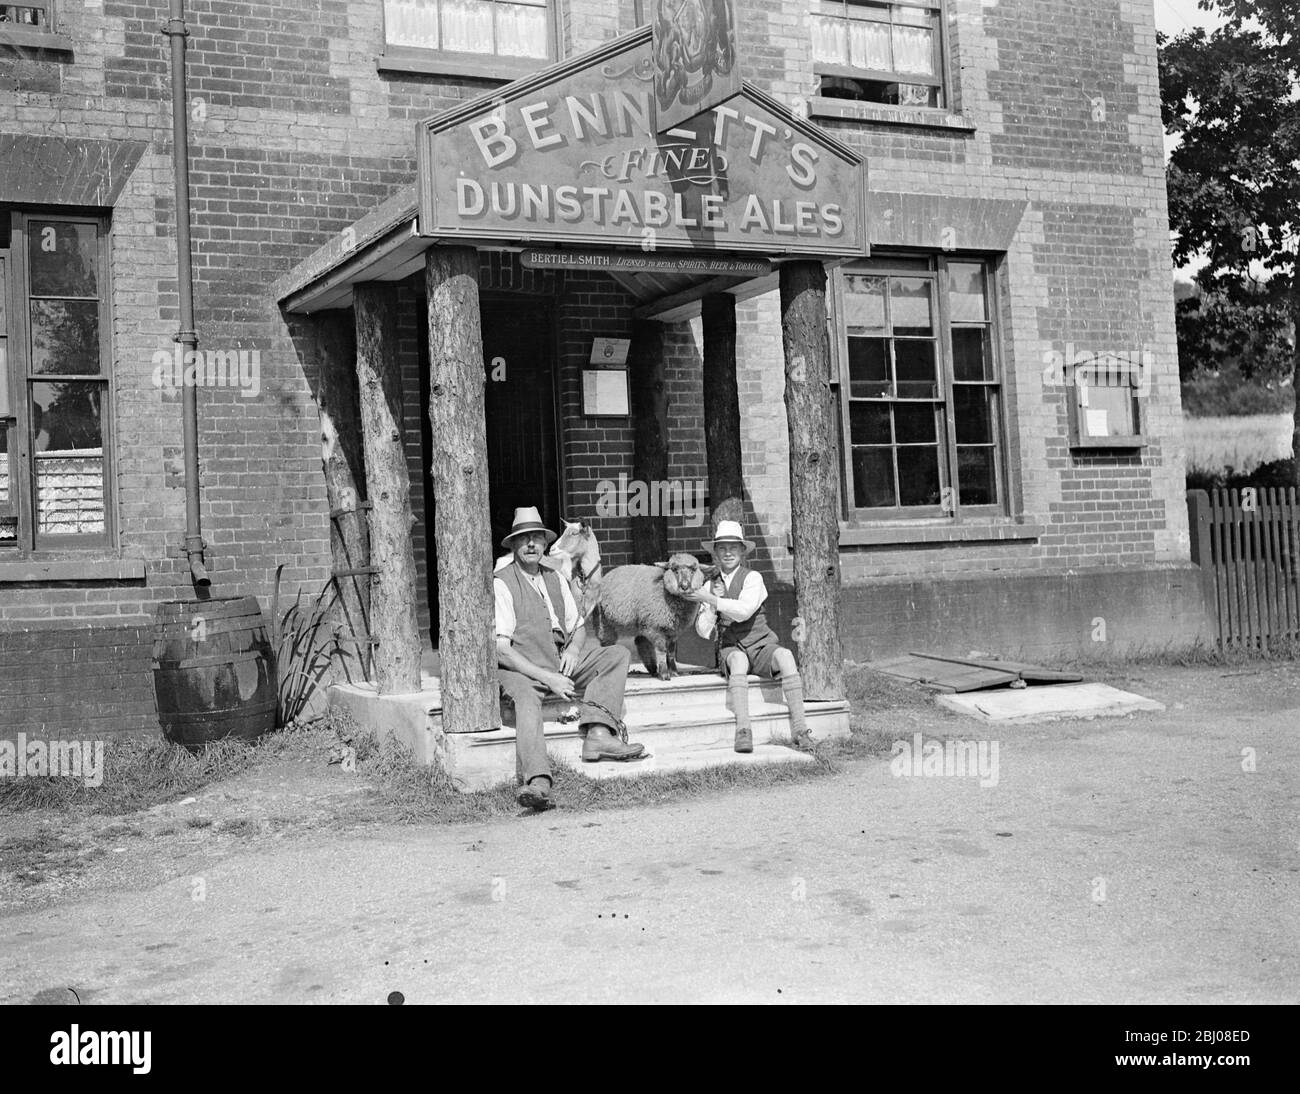 Bertie L Smith Eigentümer von öffentlichen Haus . Bennetts Fine Dunstable Ales - 15. August 1932 Stockfoto